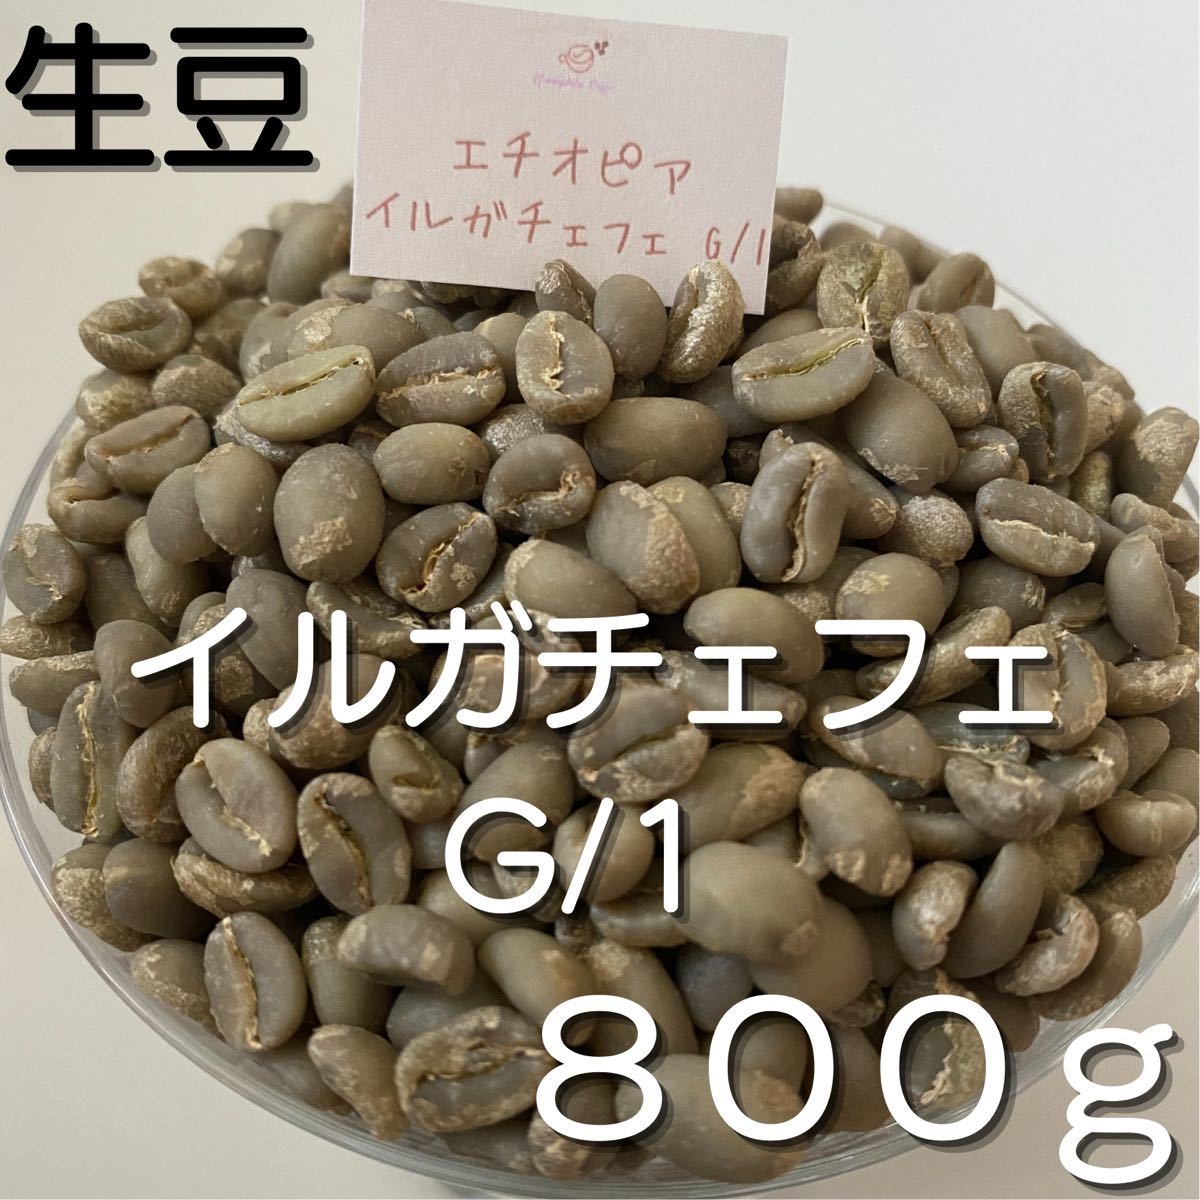 【コーヒー生豆】イルガチェフェ G/1 800g